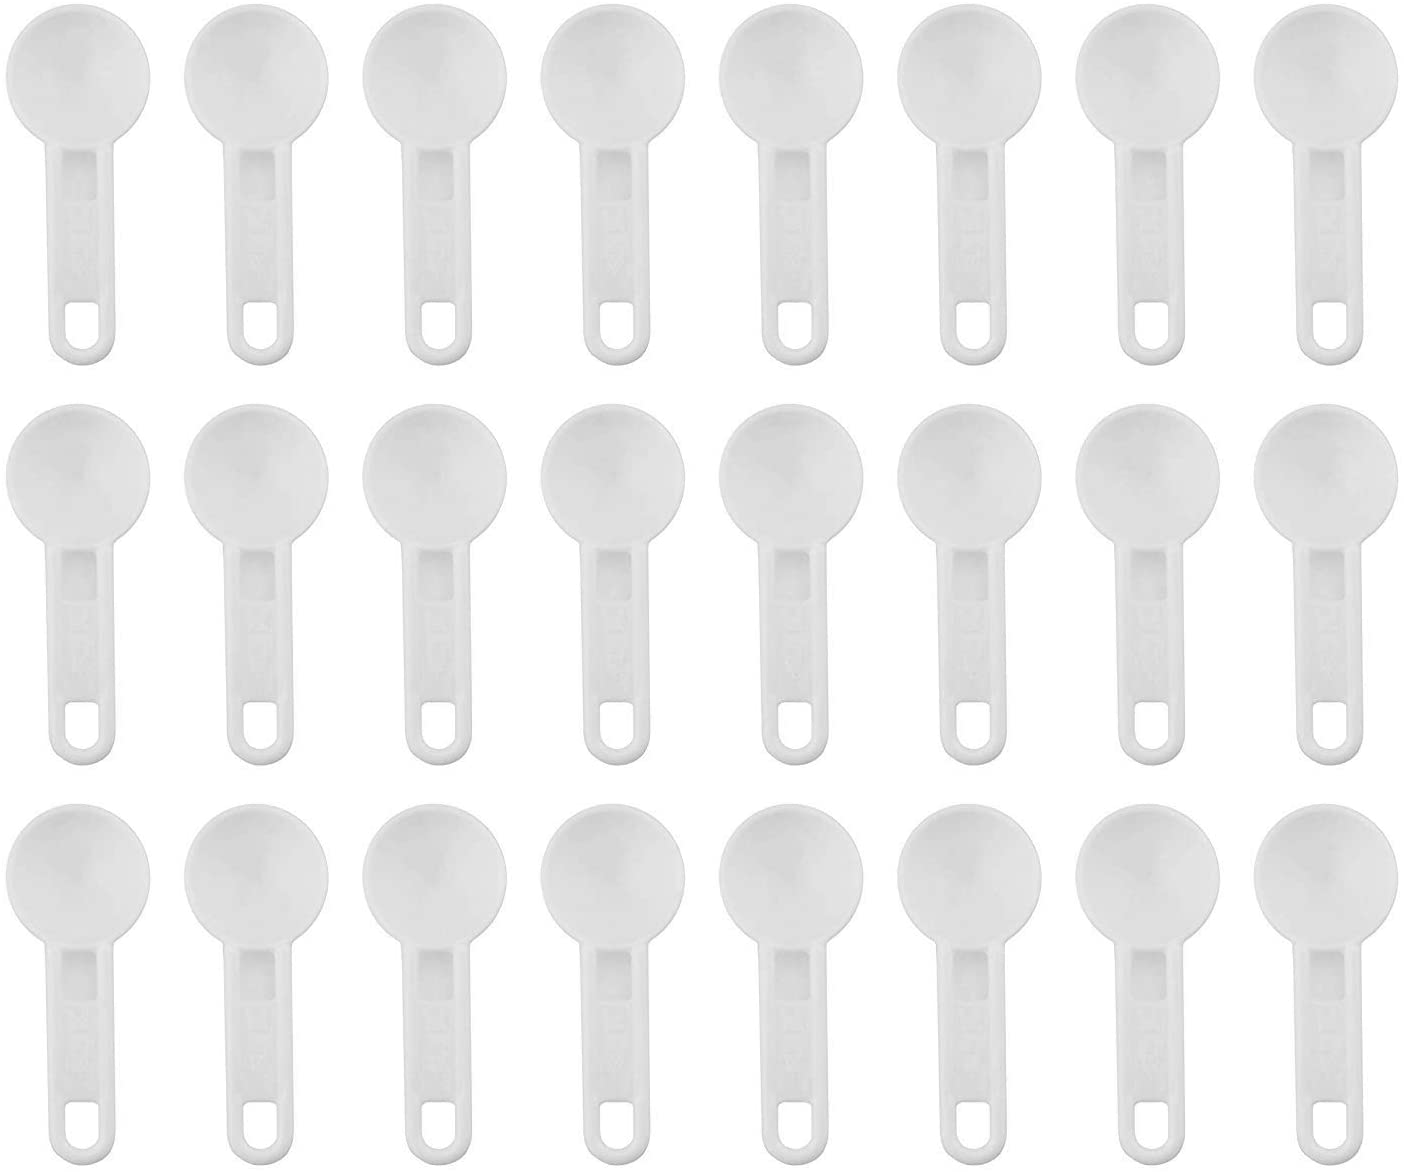 Bulk Pack of Teaspoon Measuring Spoons (24-Pack) - sh1247cb0tsp